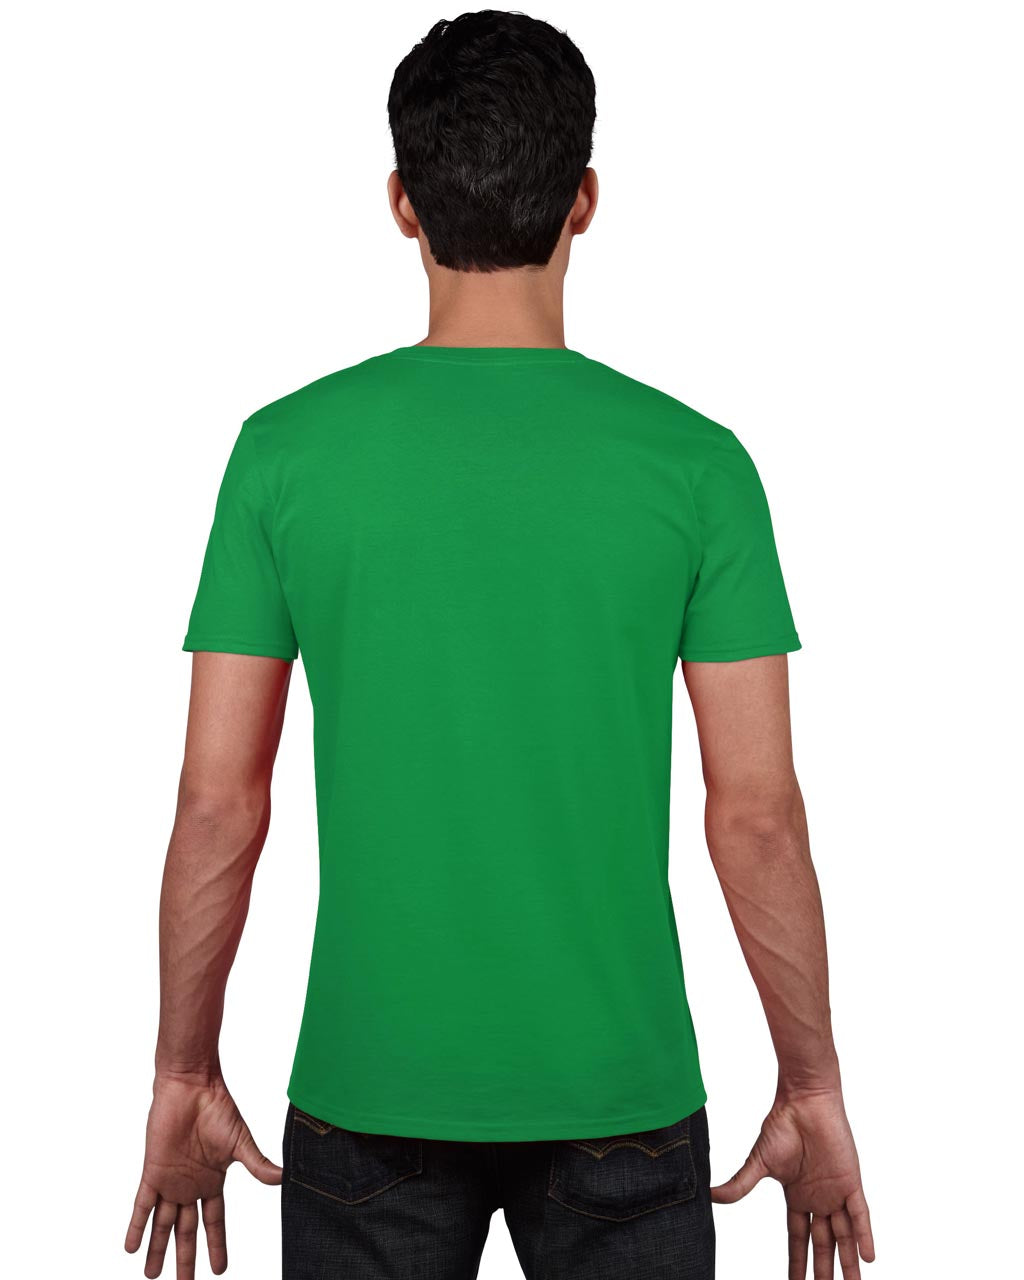 Gildan Herren T-Shirt V-Neck Shirt V-Ausschnitt Kurzarm Basic